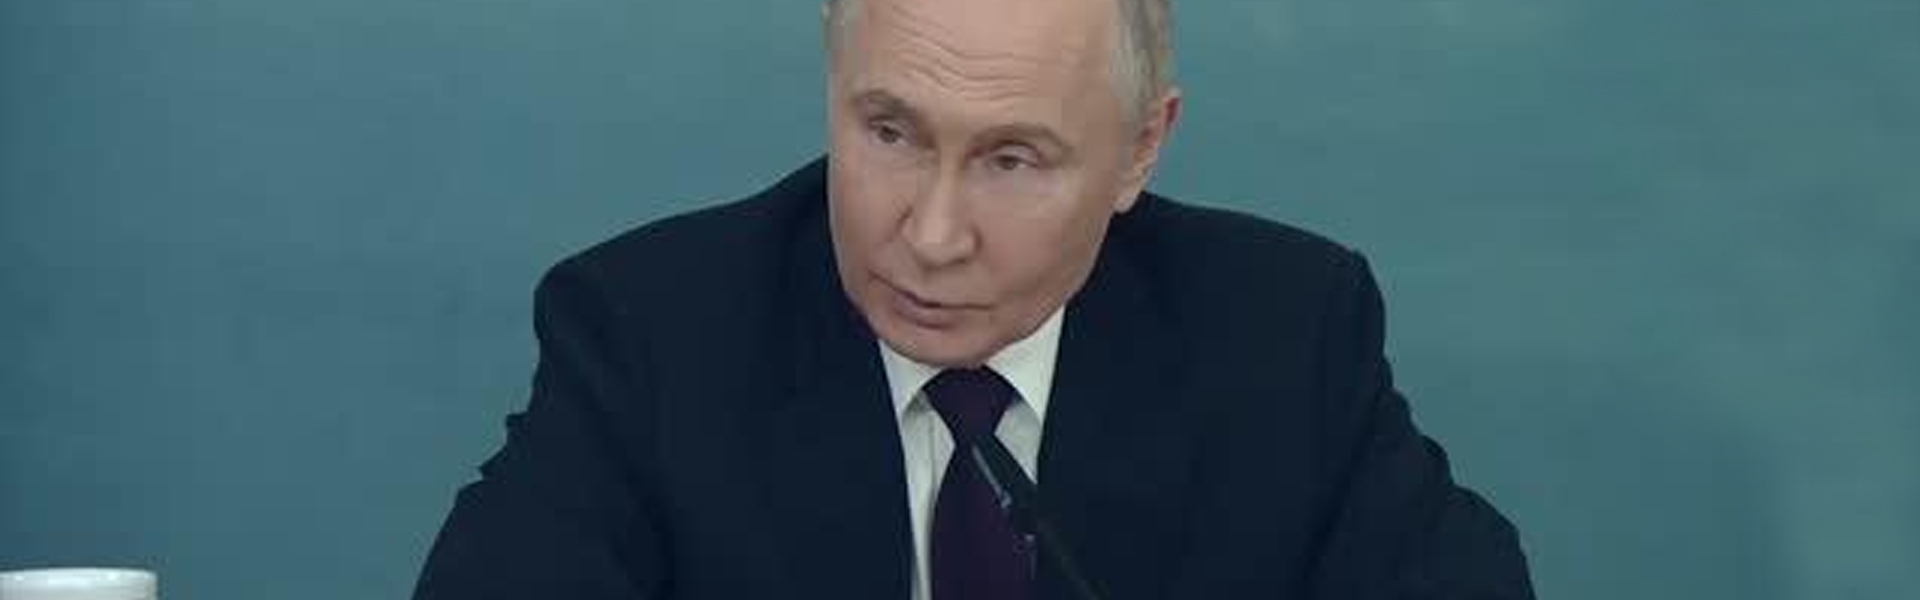 Перед ПМЭФ во время СВО Путин поговорил с иностранными СМИ под крышей Миллера и ТАСС